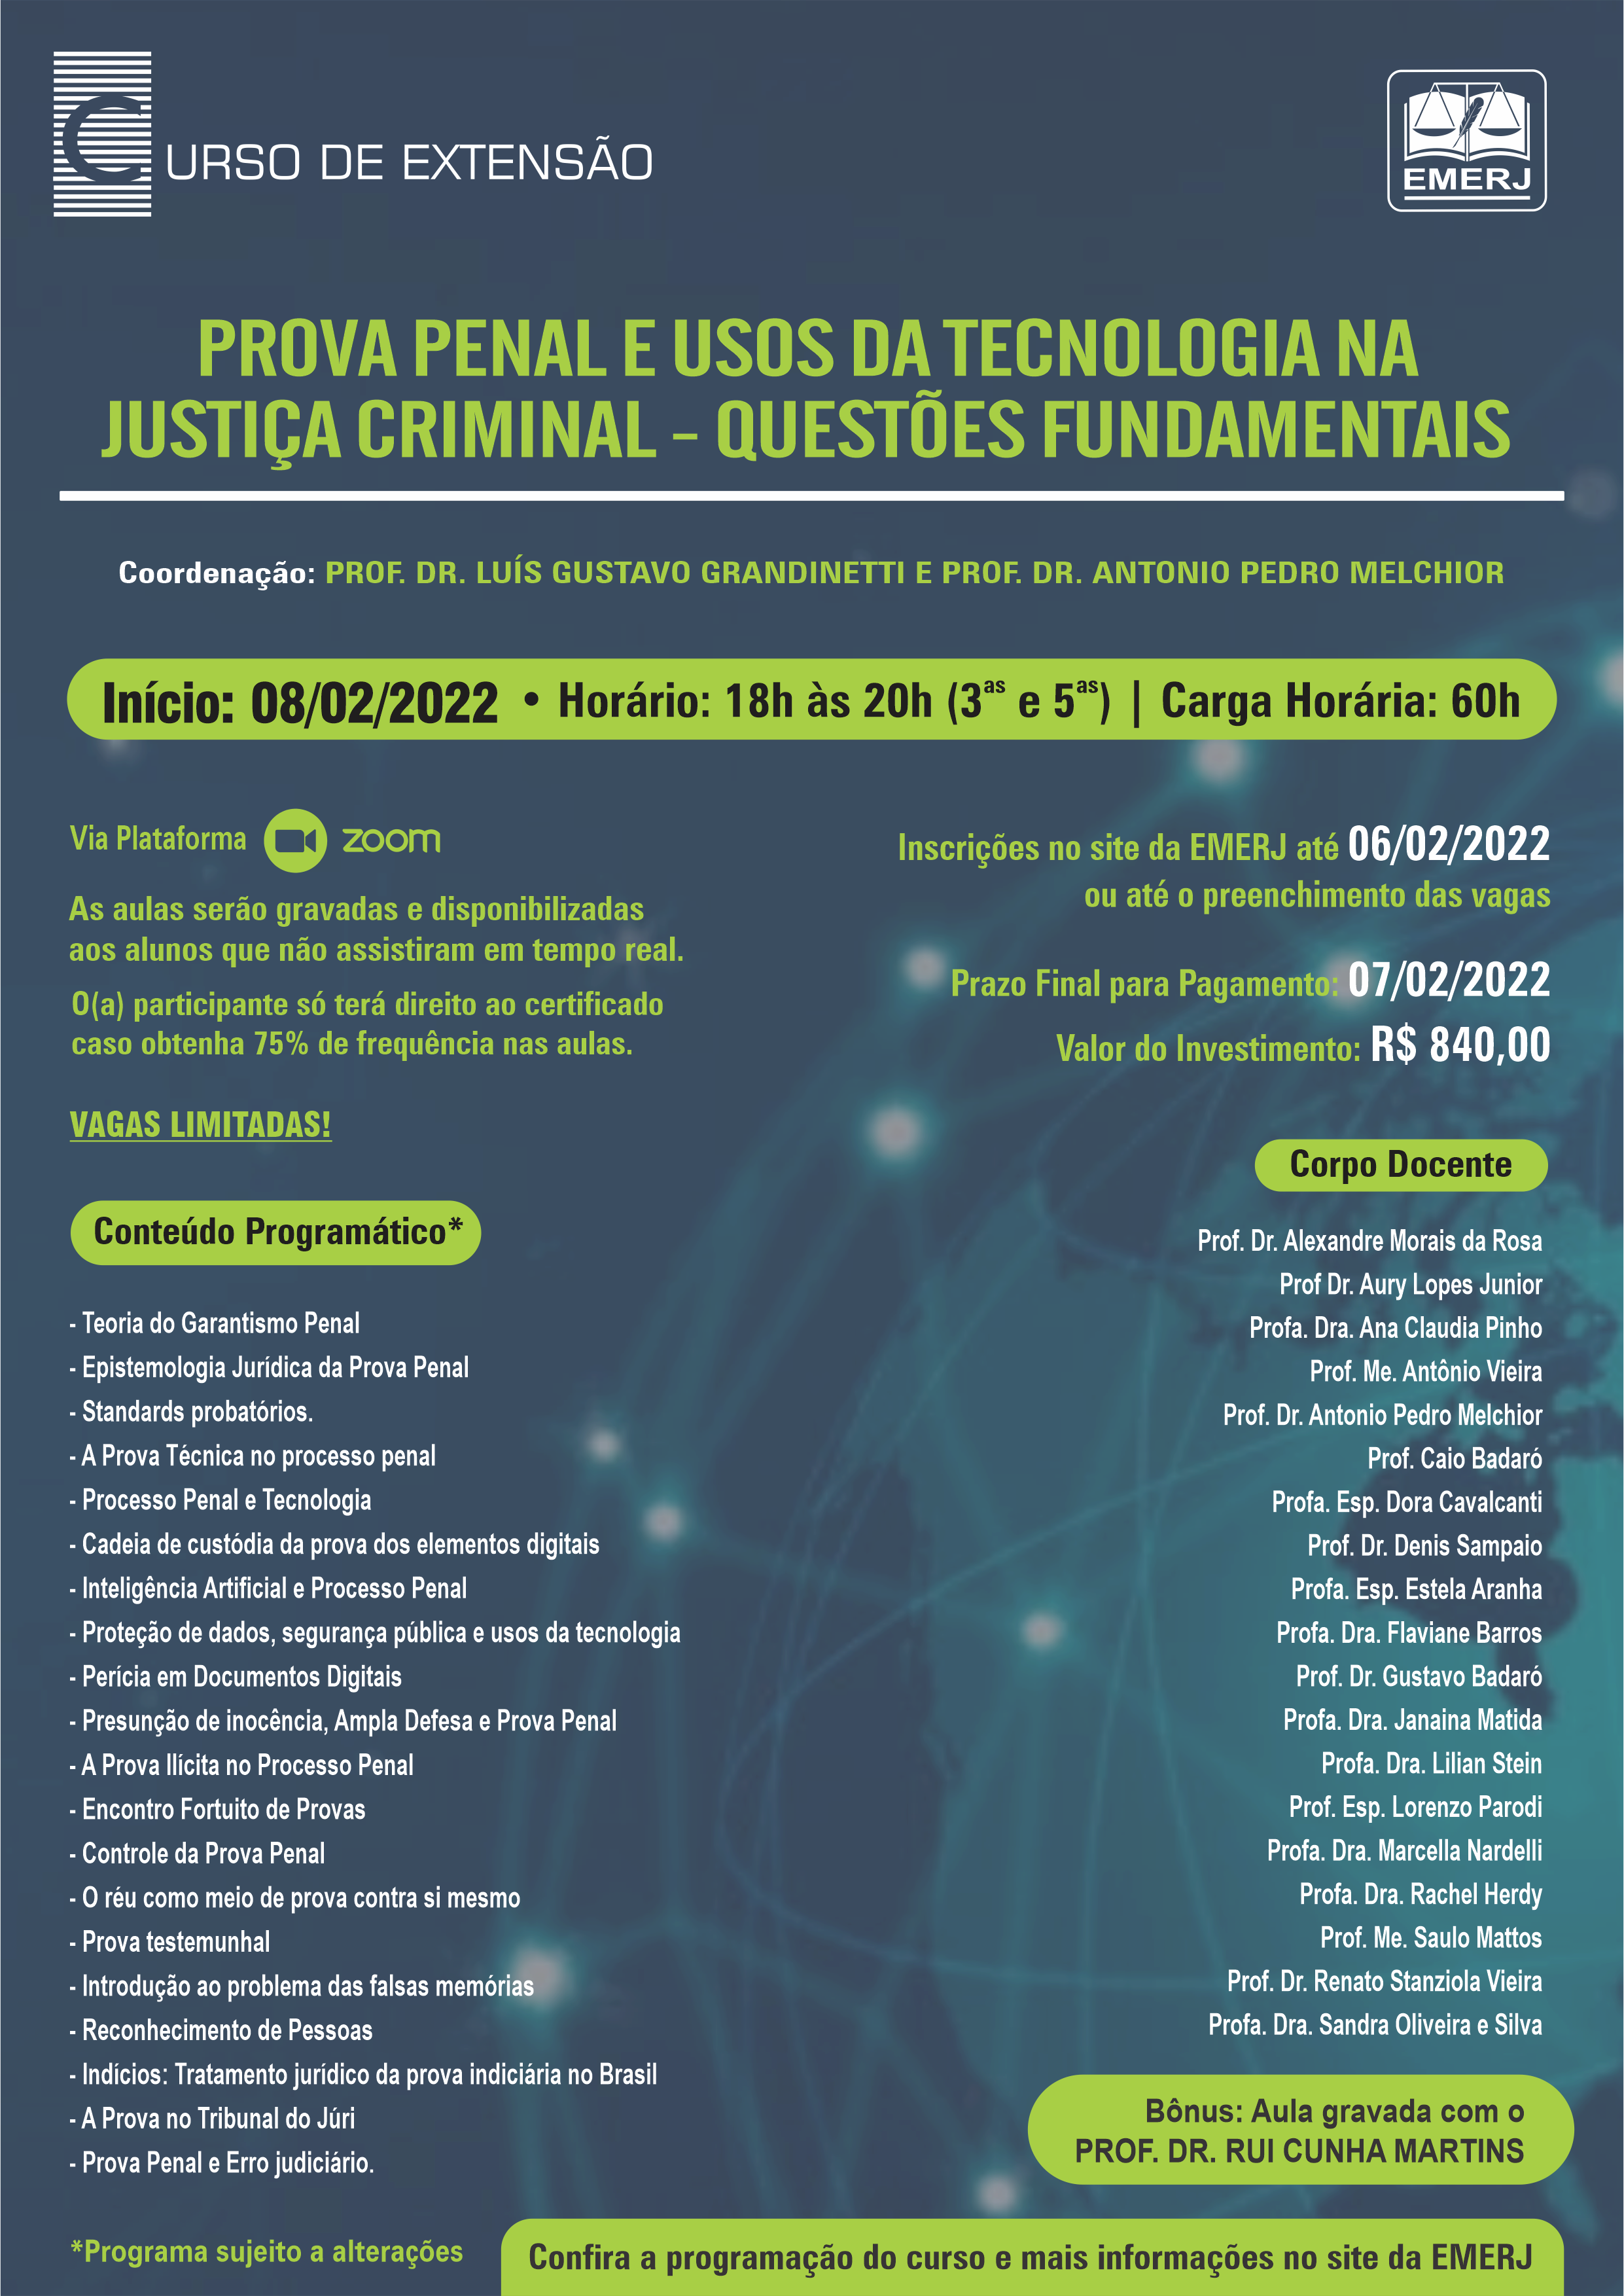  Prova Penal E Usos Da Tecnologia Na Justiça Criminal
        Questões Fundamentais 